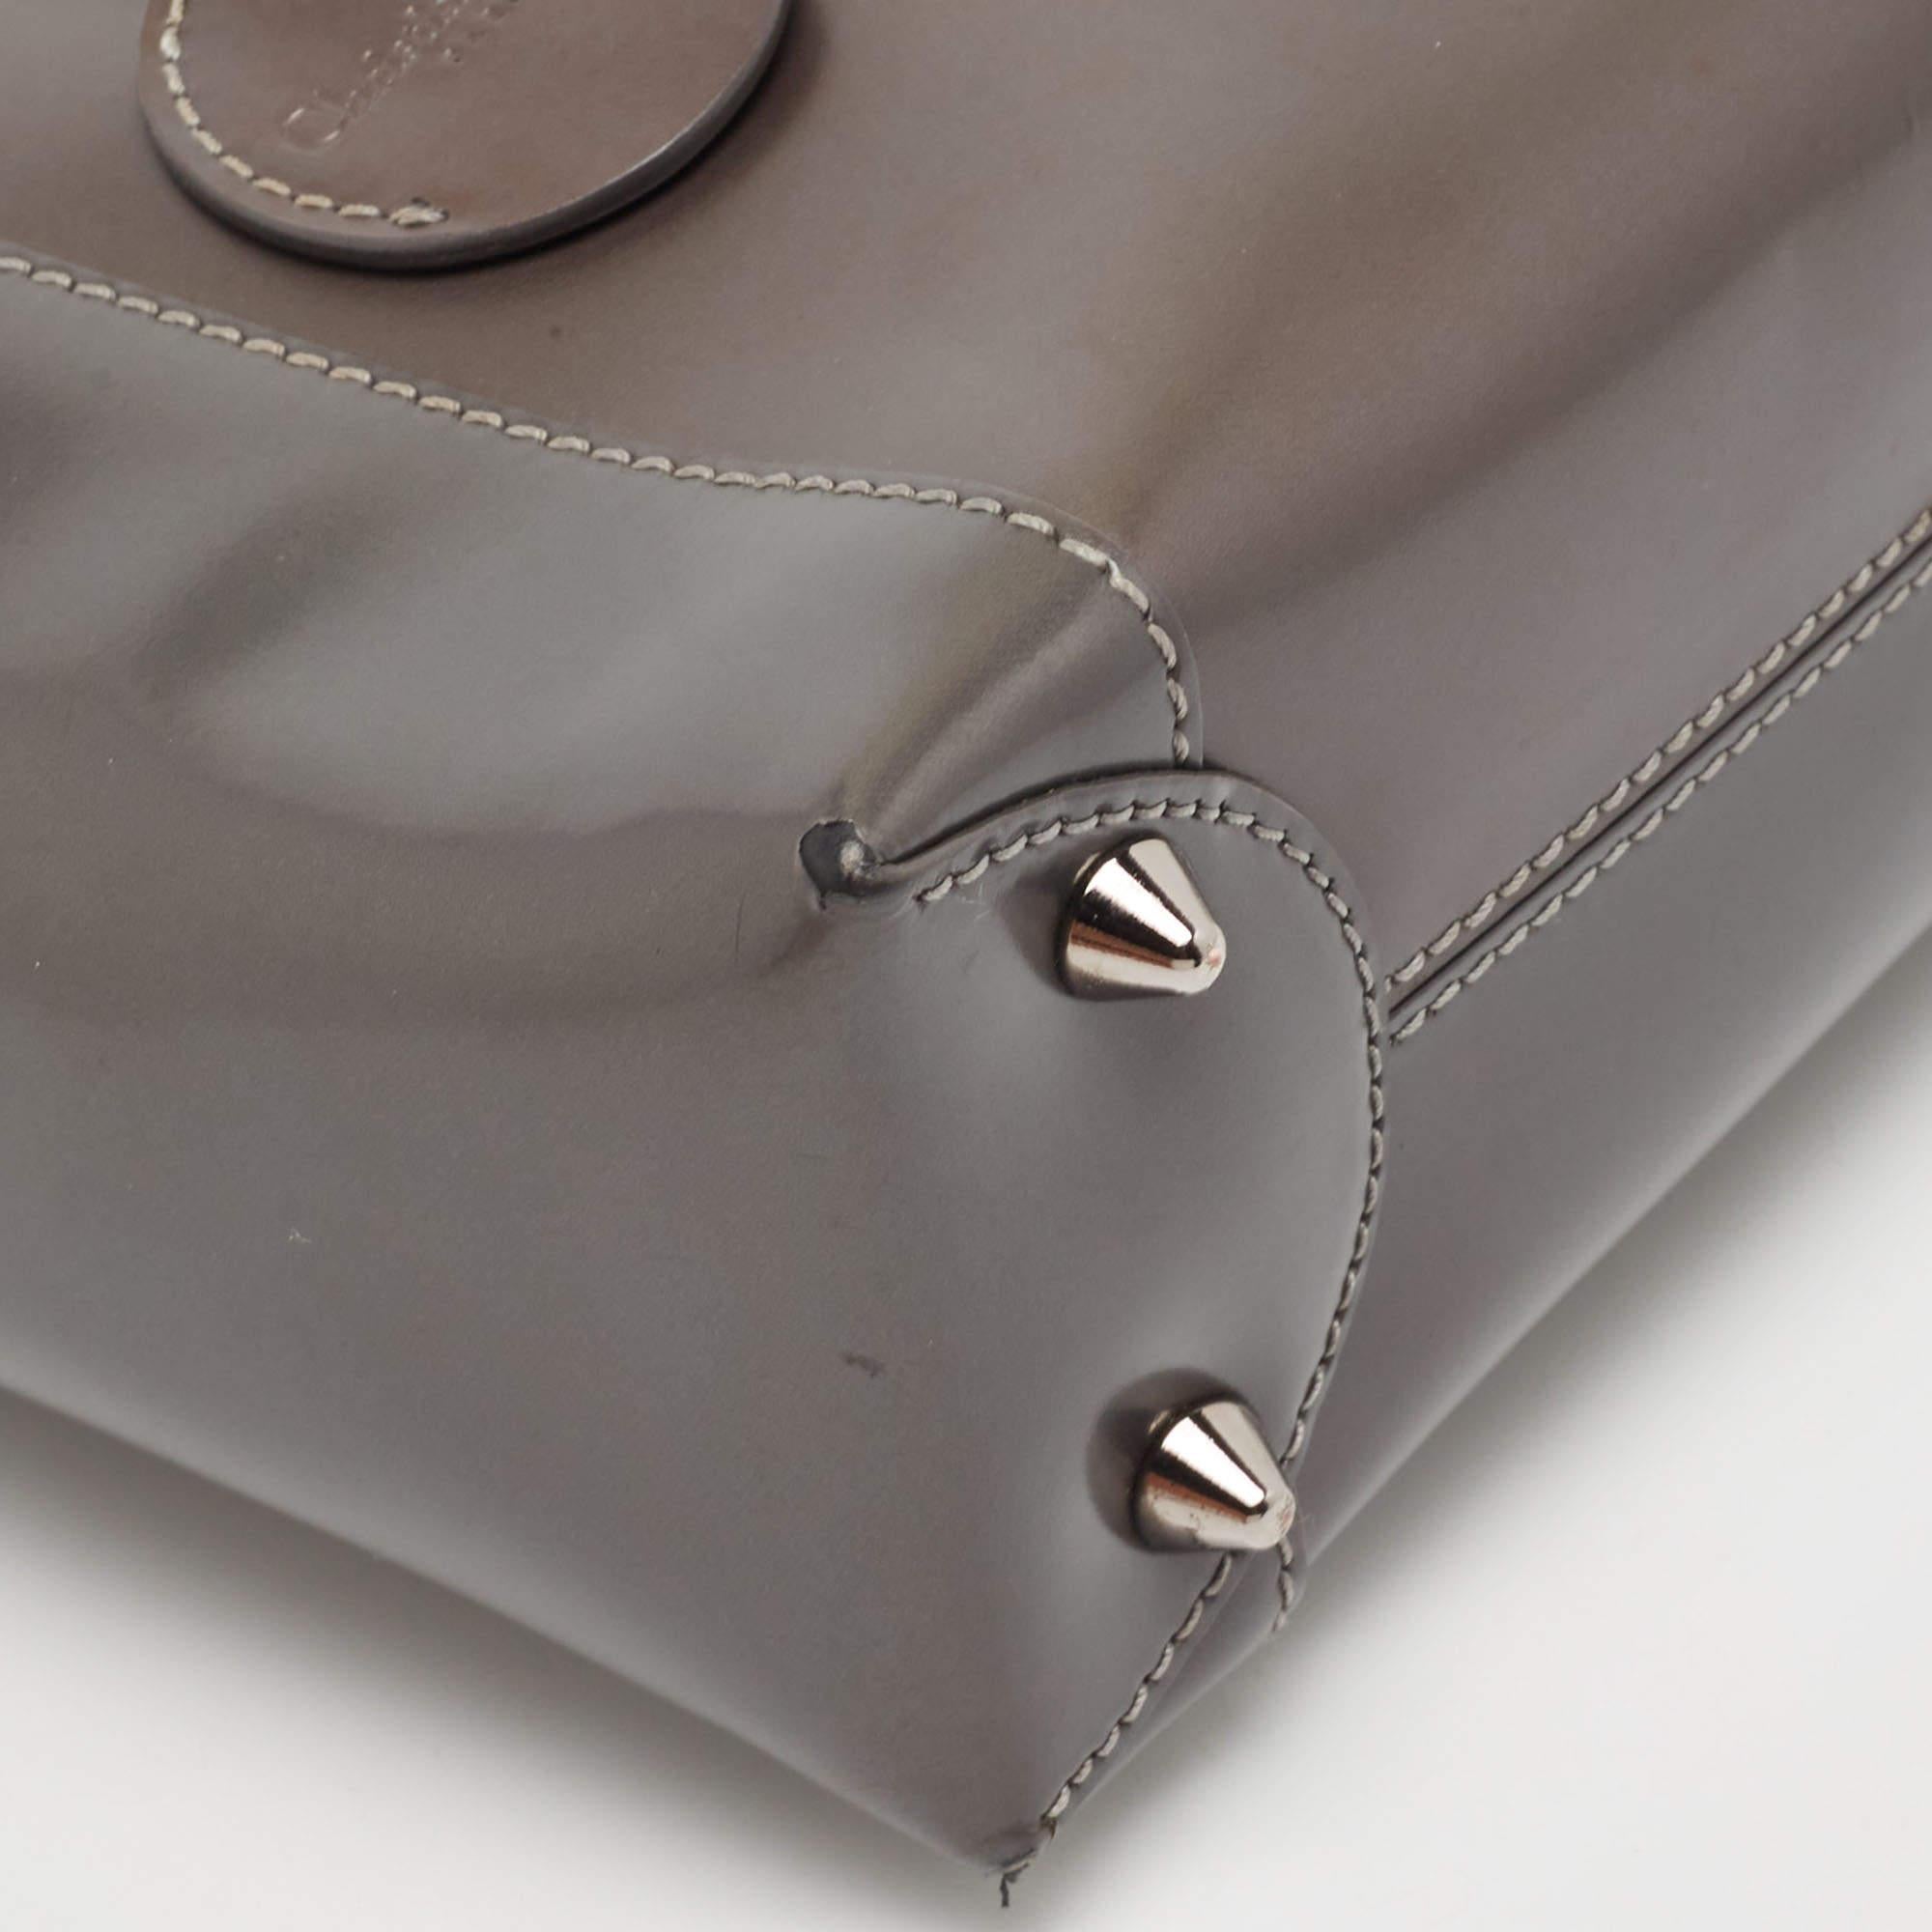 Dior Metallic Dark Grey Leather Malice Tote In Good Condition For Sale In Dubai, Al Qouz 2